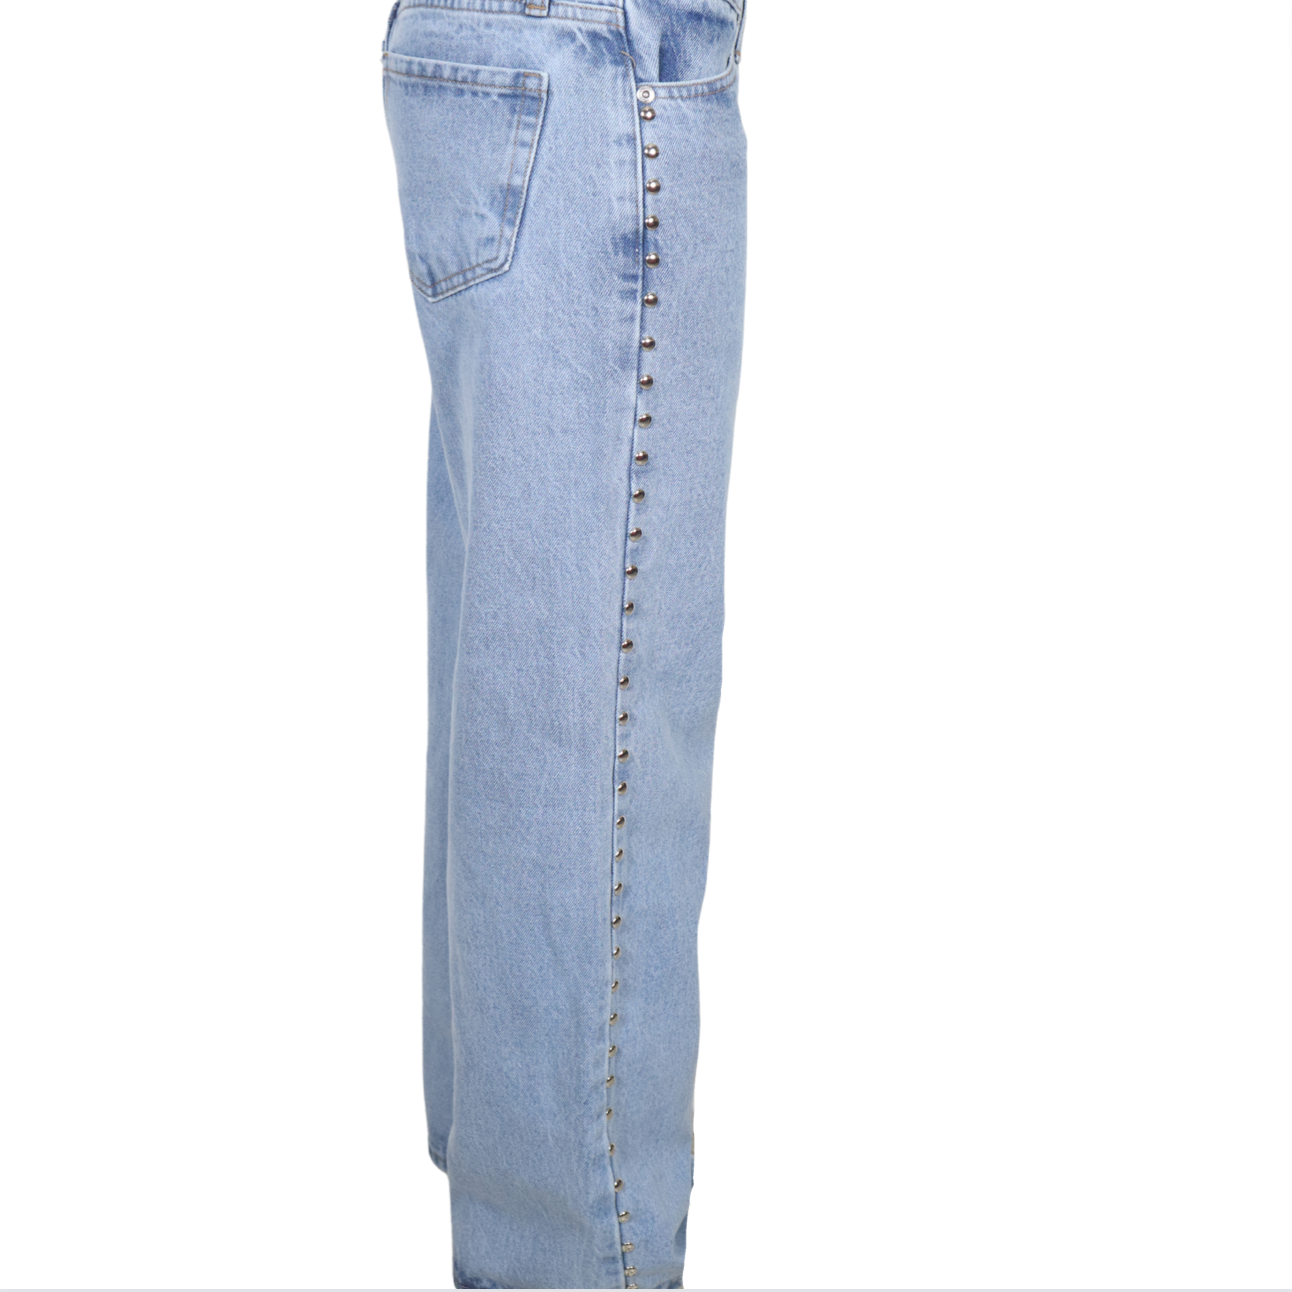 Jeans safari (PRÓXIMAMENTE RESTOCK)